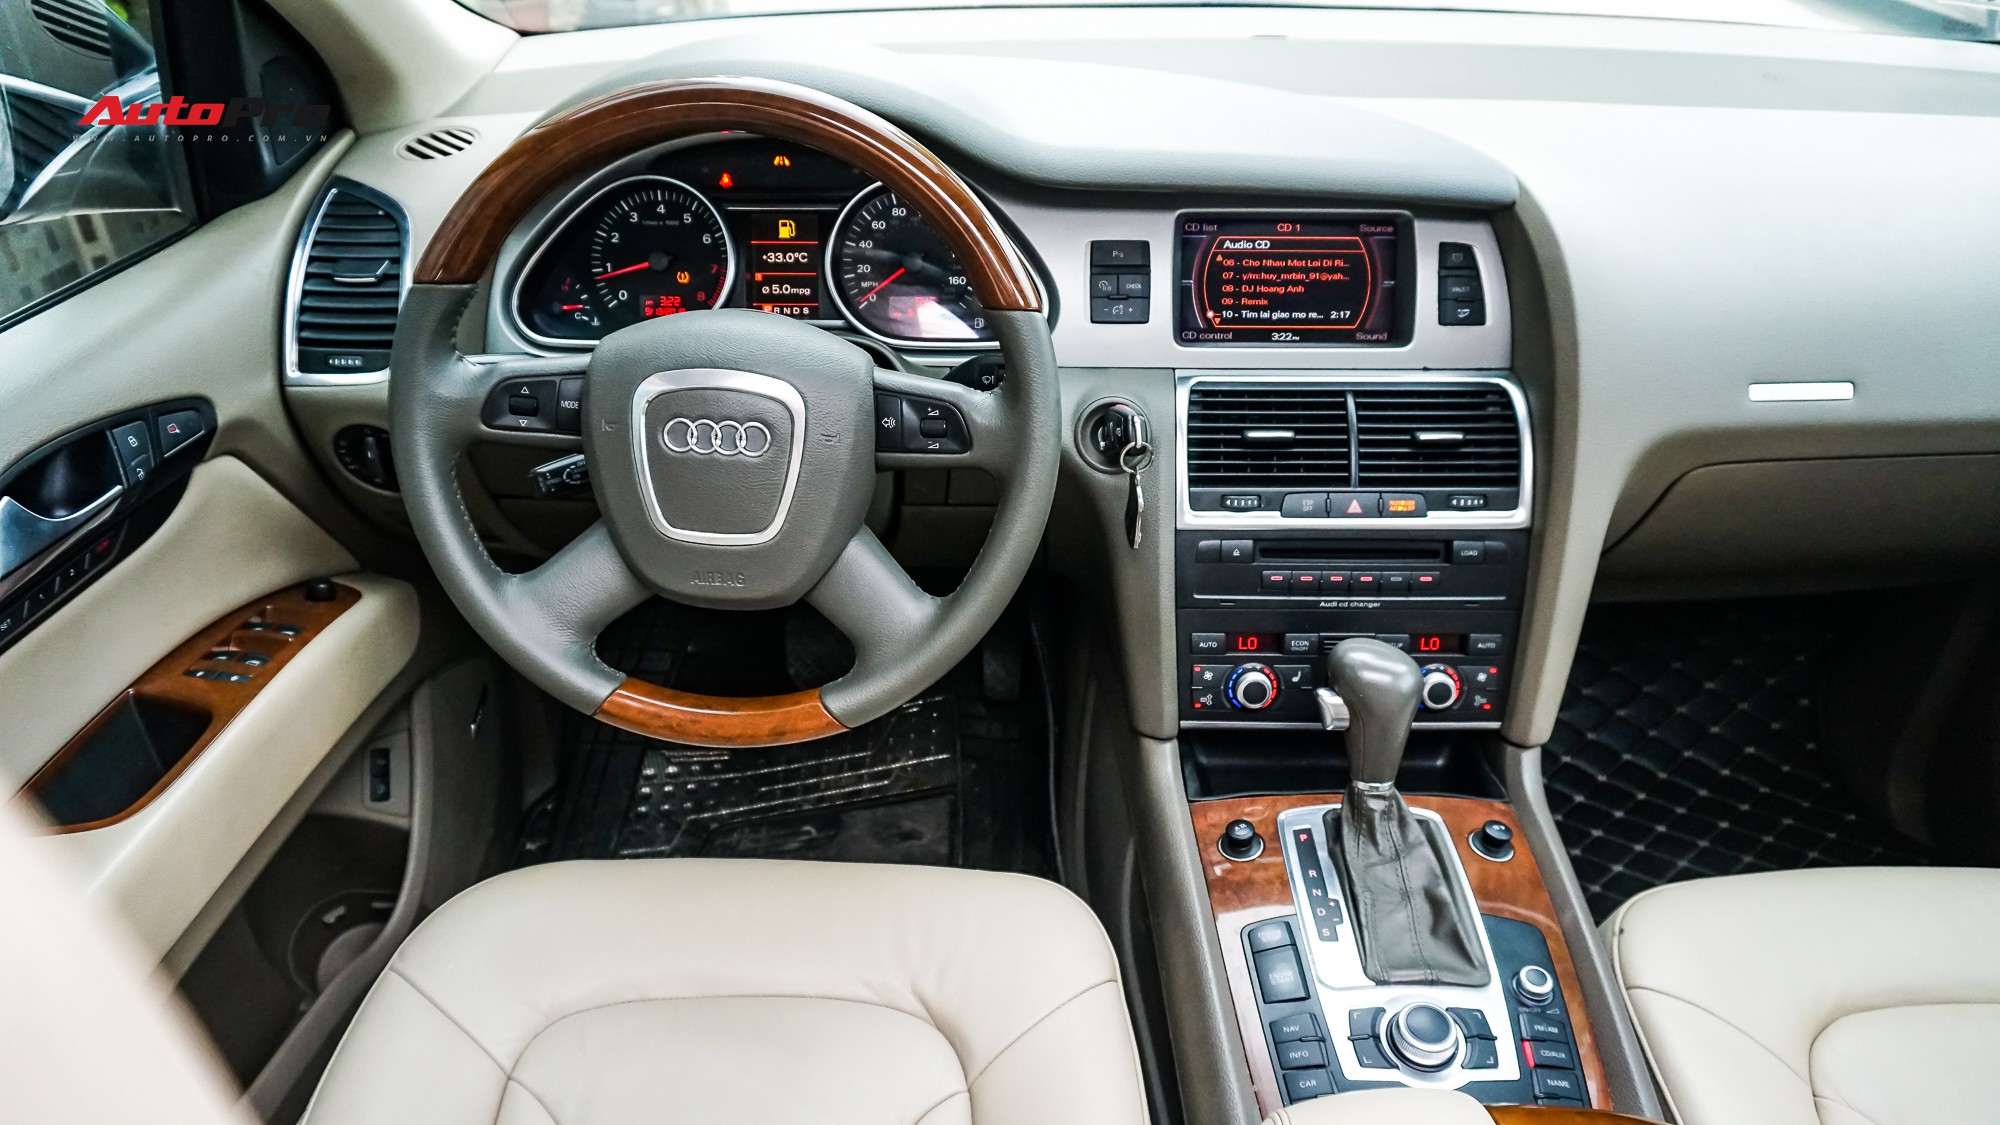 Audi Q7 2008 giá 950 triệu đắt hay rẻ